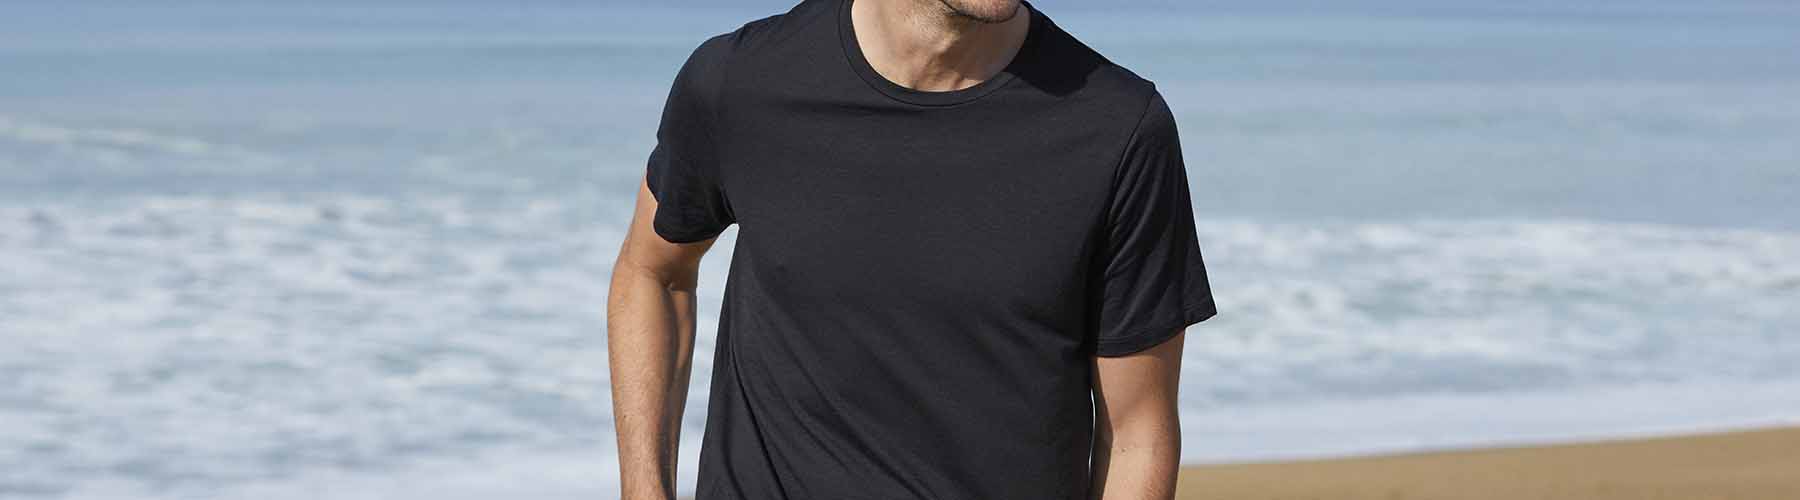 Man standing on the beach wearing black icebreaker merino t-shirt